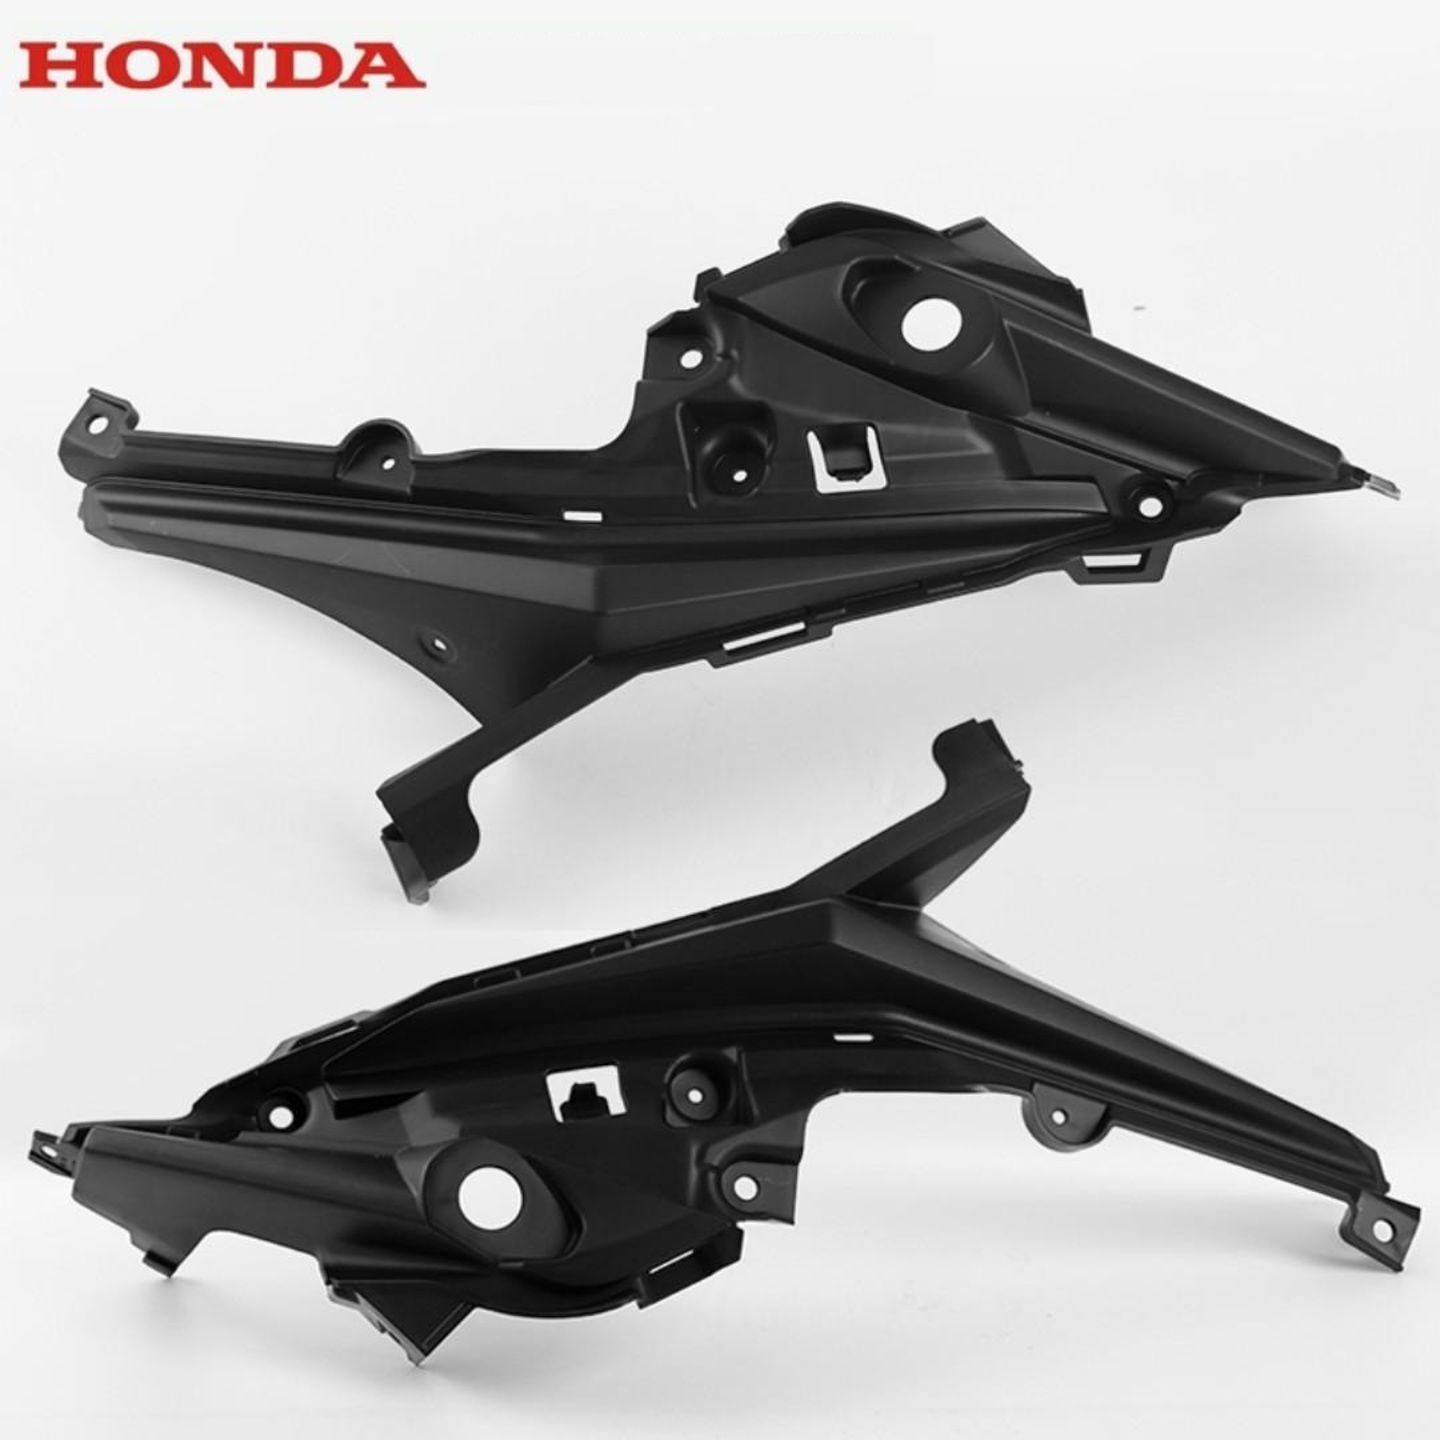 Honda CBF190X inner bracket left right fairings cover covers frame